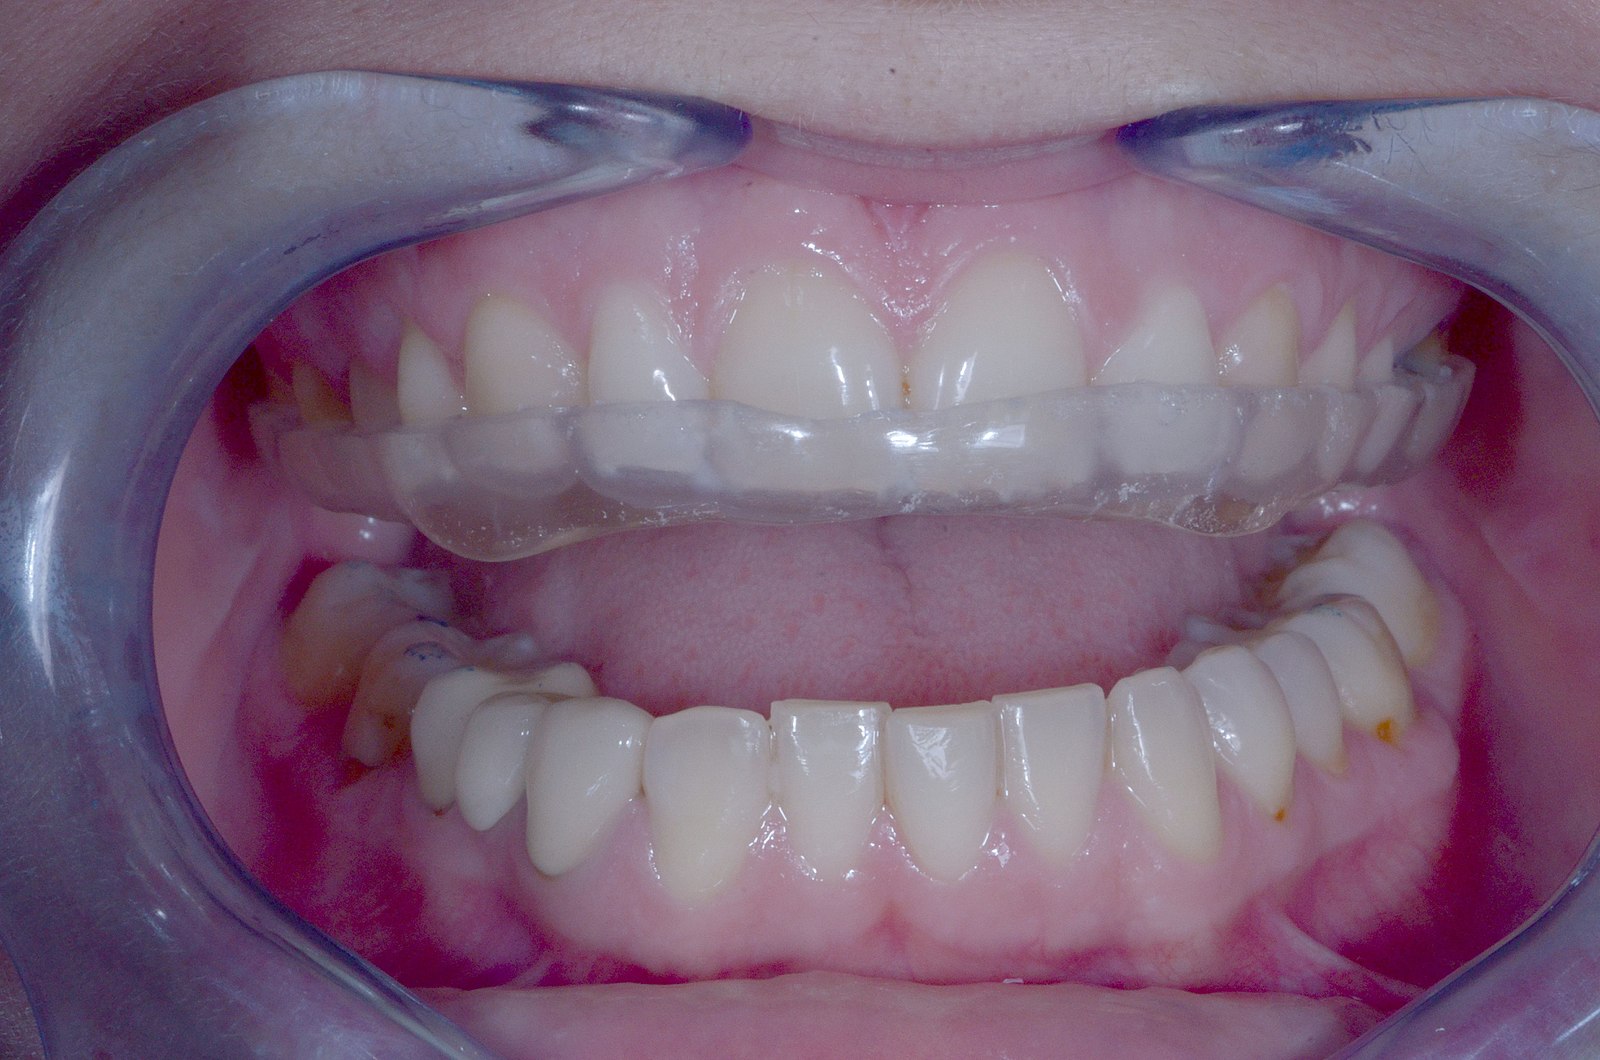 Bruxismo  Cómo tratar el apretamiento y rechinar de los dientes